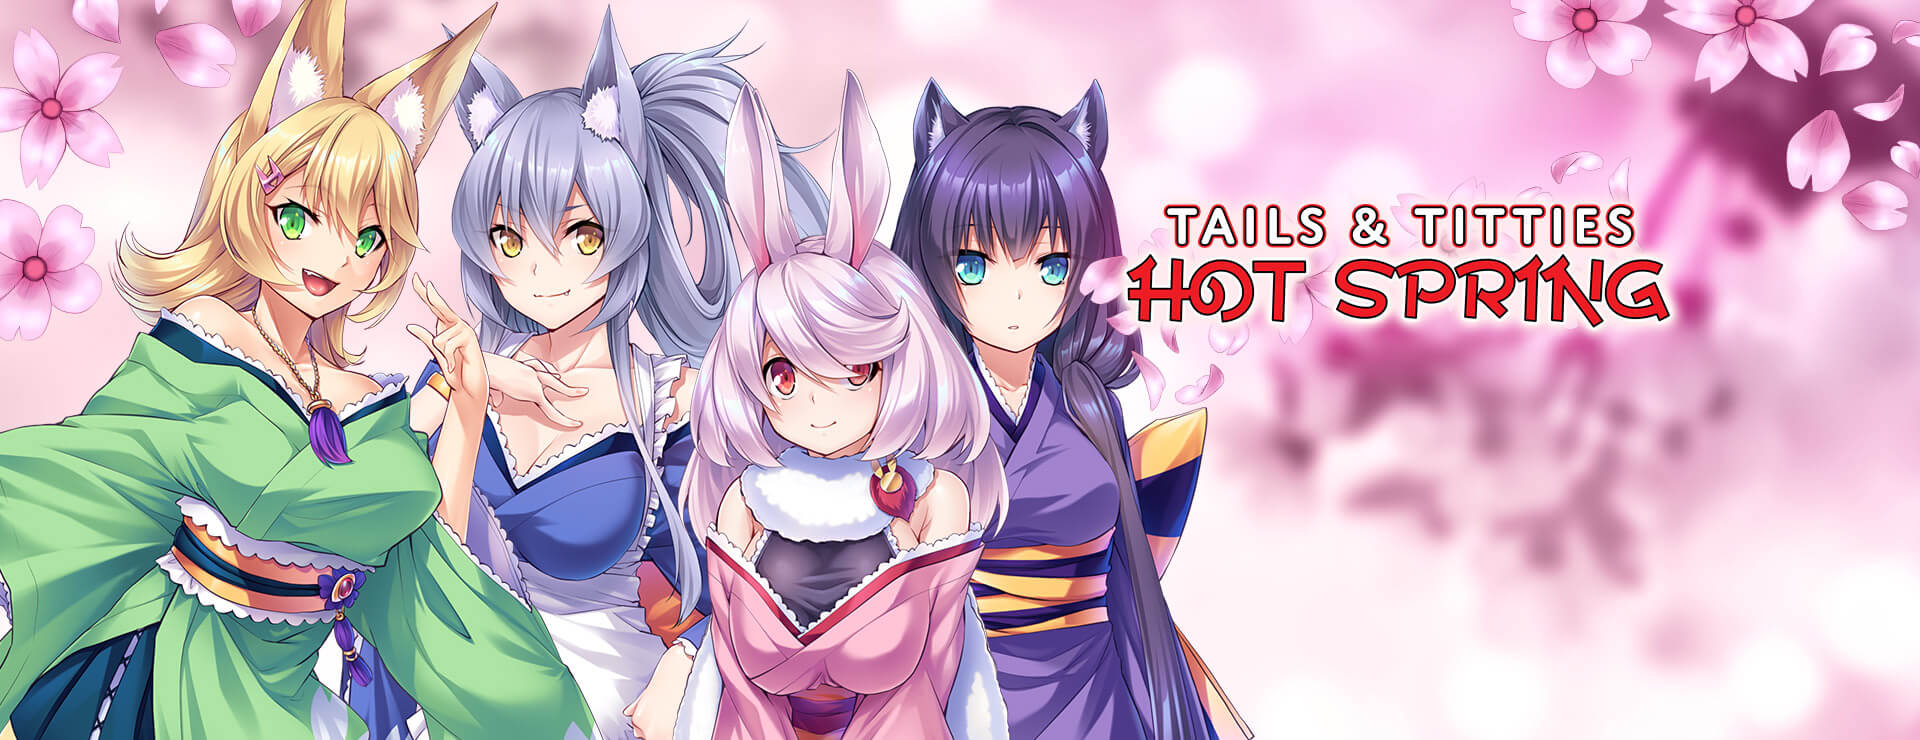 Tails & Titties Hot Spring - Novela Visual Juego